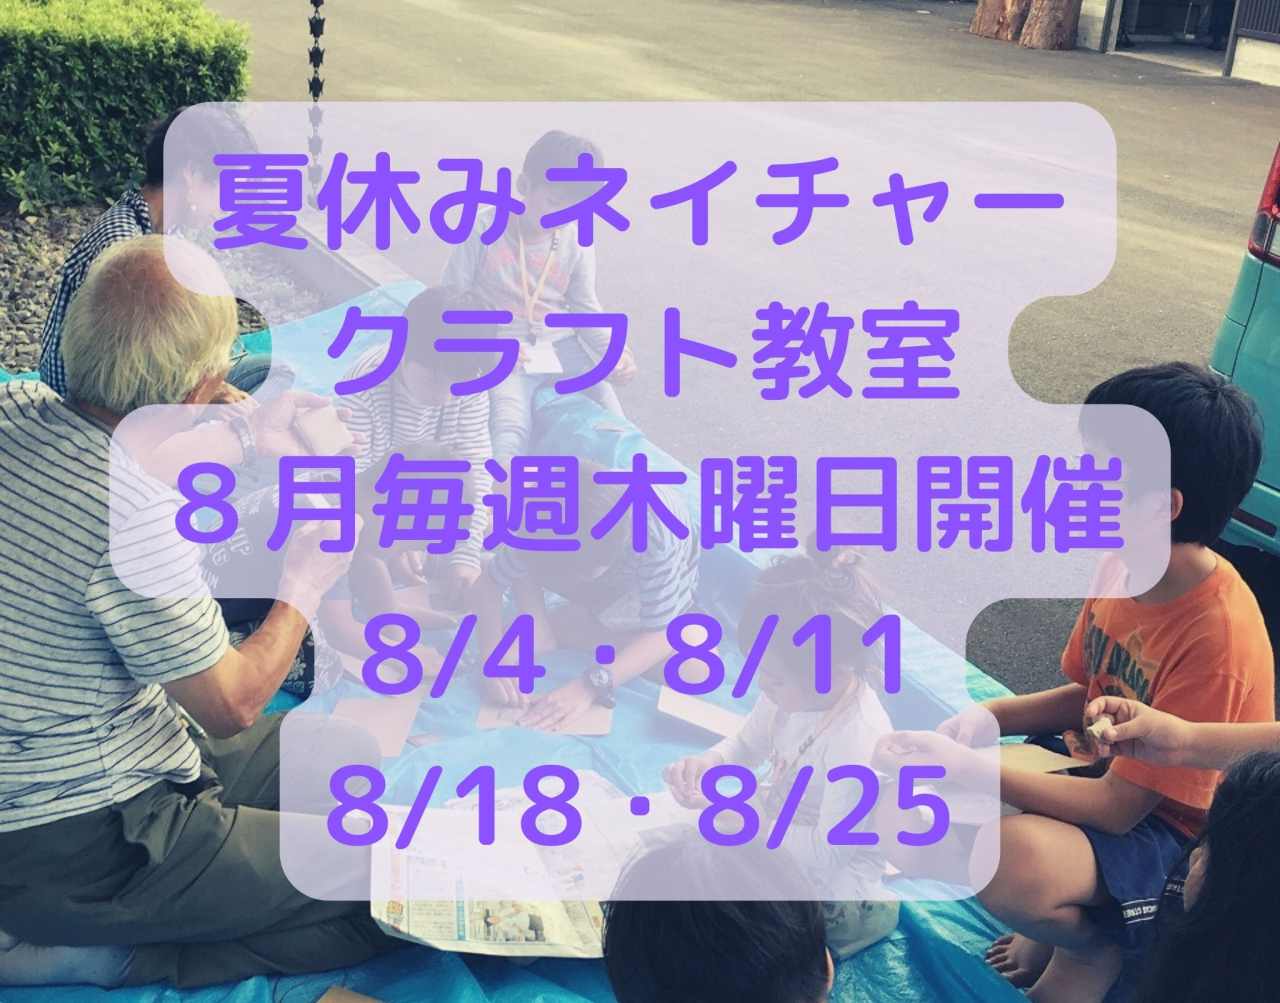 【本山町】夏休みネイチャークラフト教室の開催について